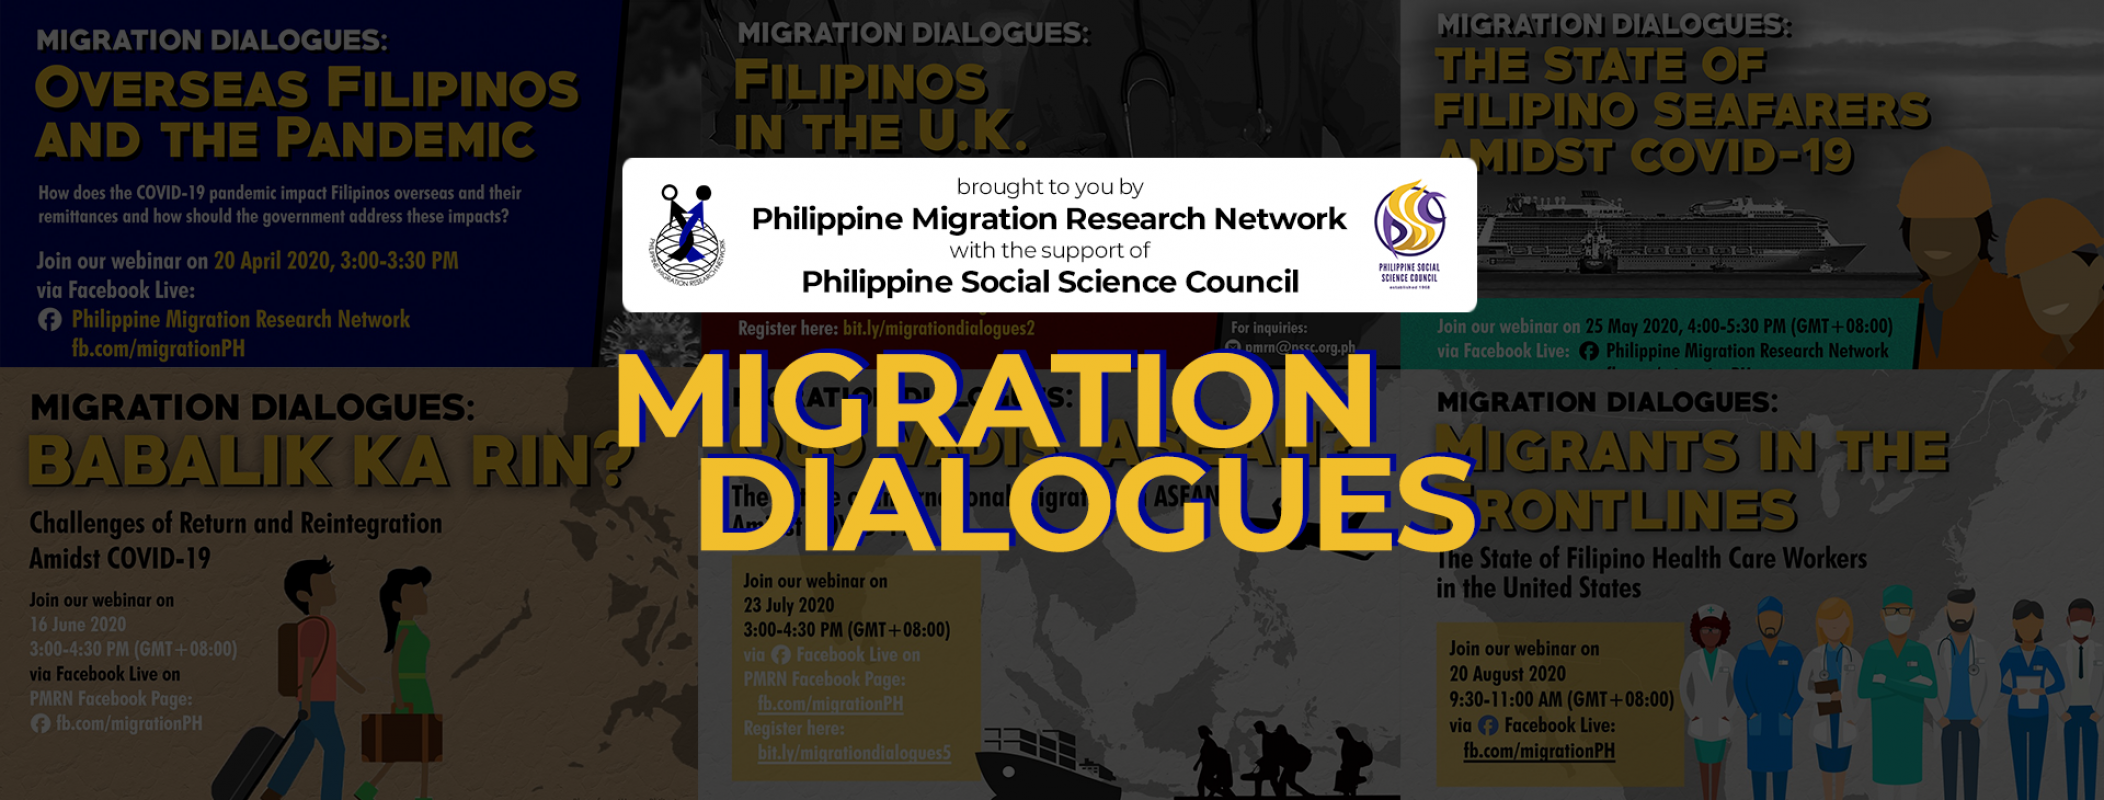 Migration-Dialogues